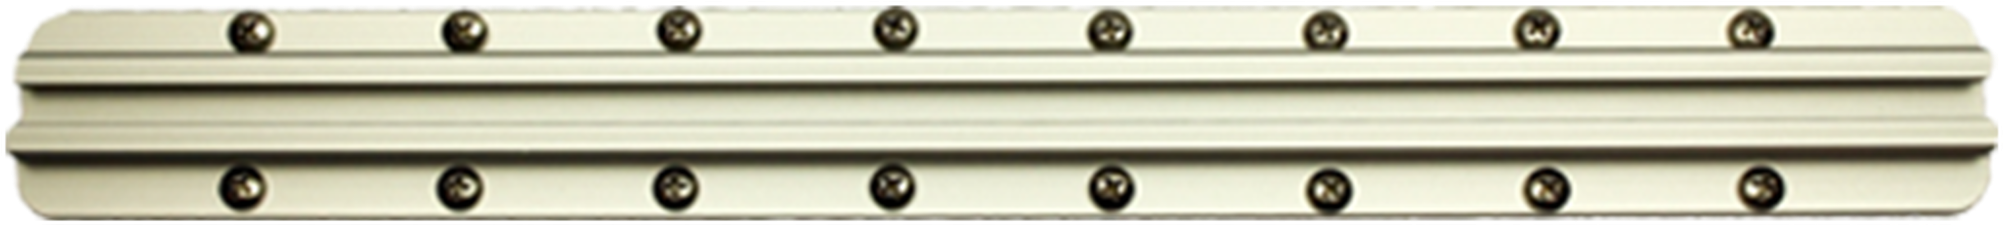 Classical Flute Keys Closeup PNG